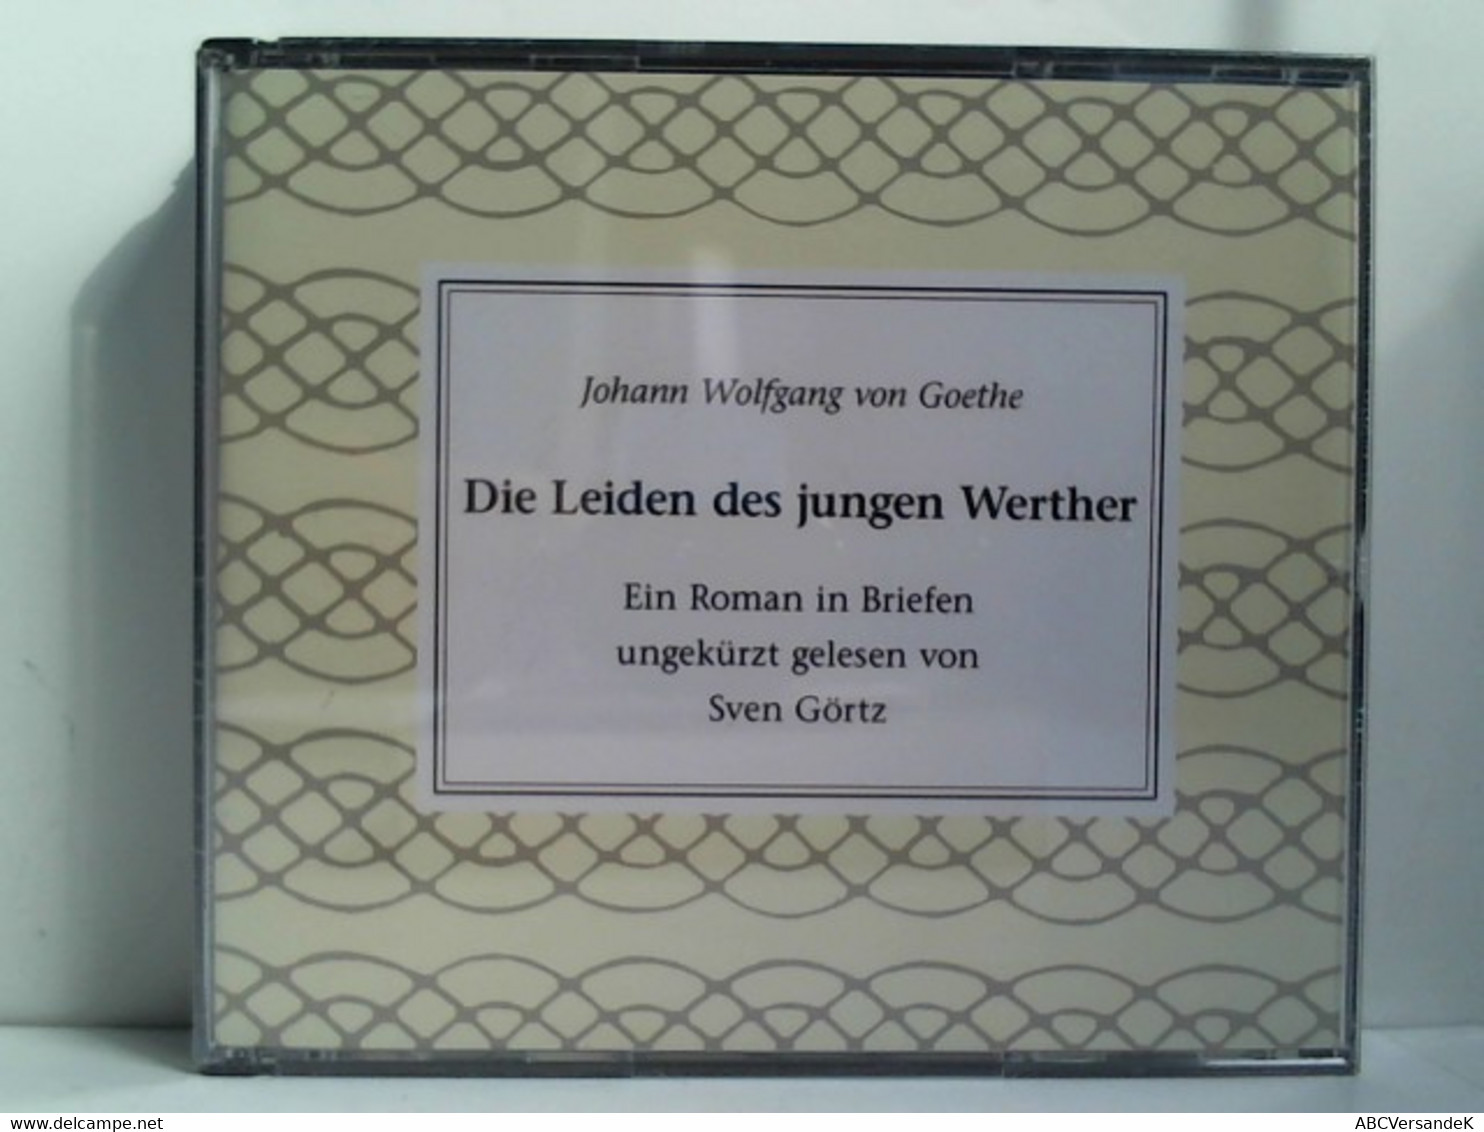 Johann W. Von Goethe: Werther - CDs